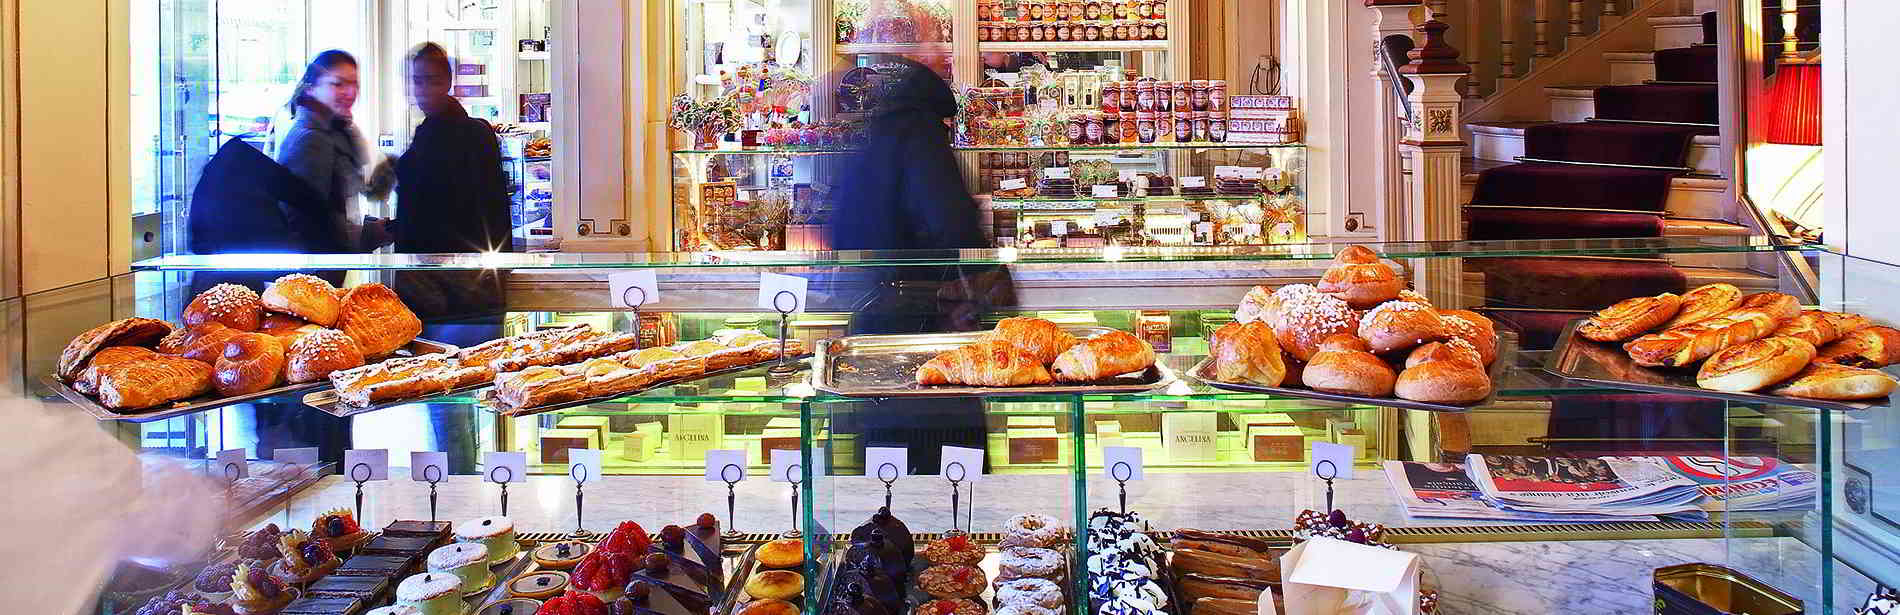 Pastries & Tea in Paris